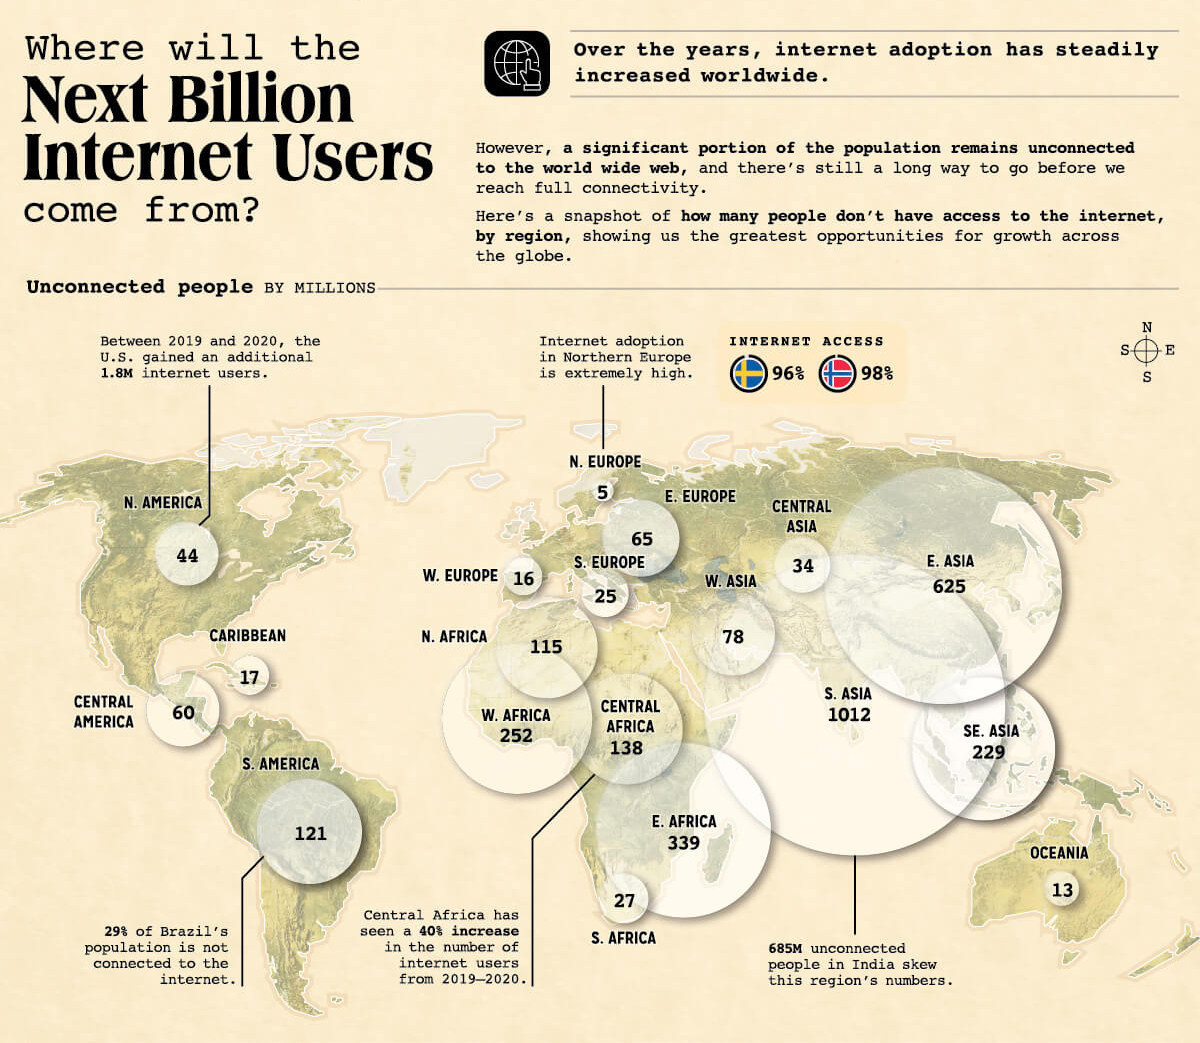 Карта с отображением географических точек роста интернет-пользователей в мире и их прогнозируемое количество. Источник: Visual Capitalist